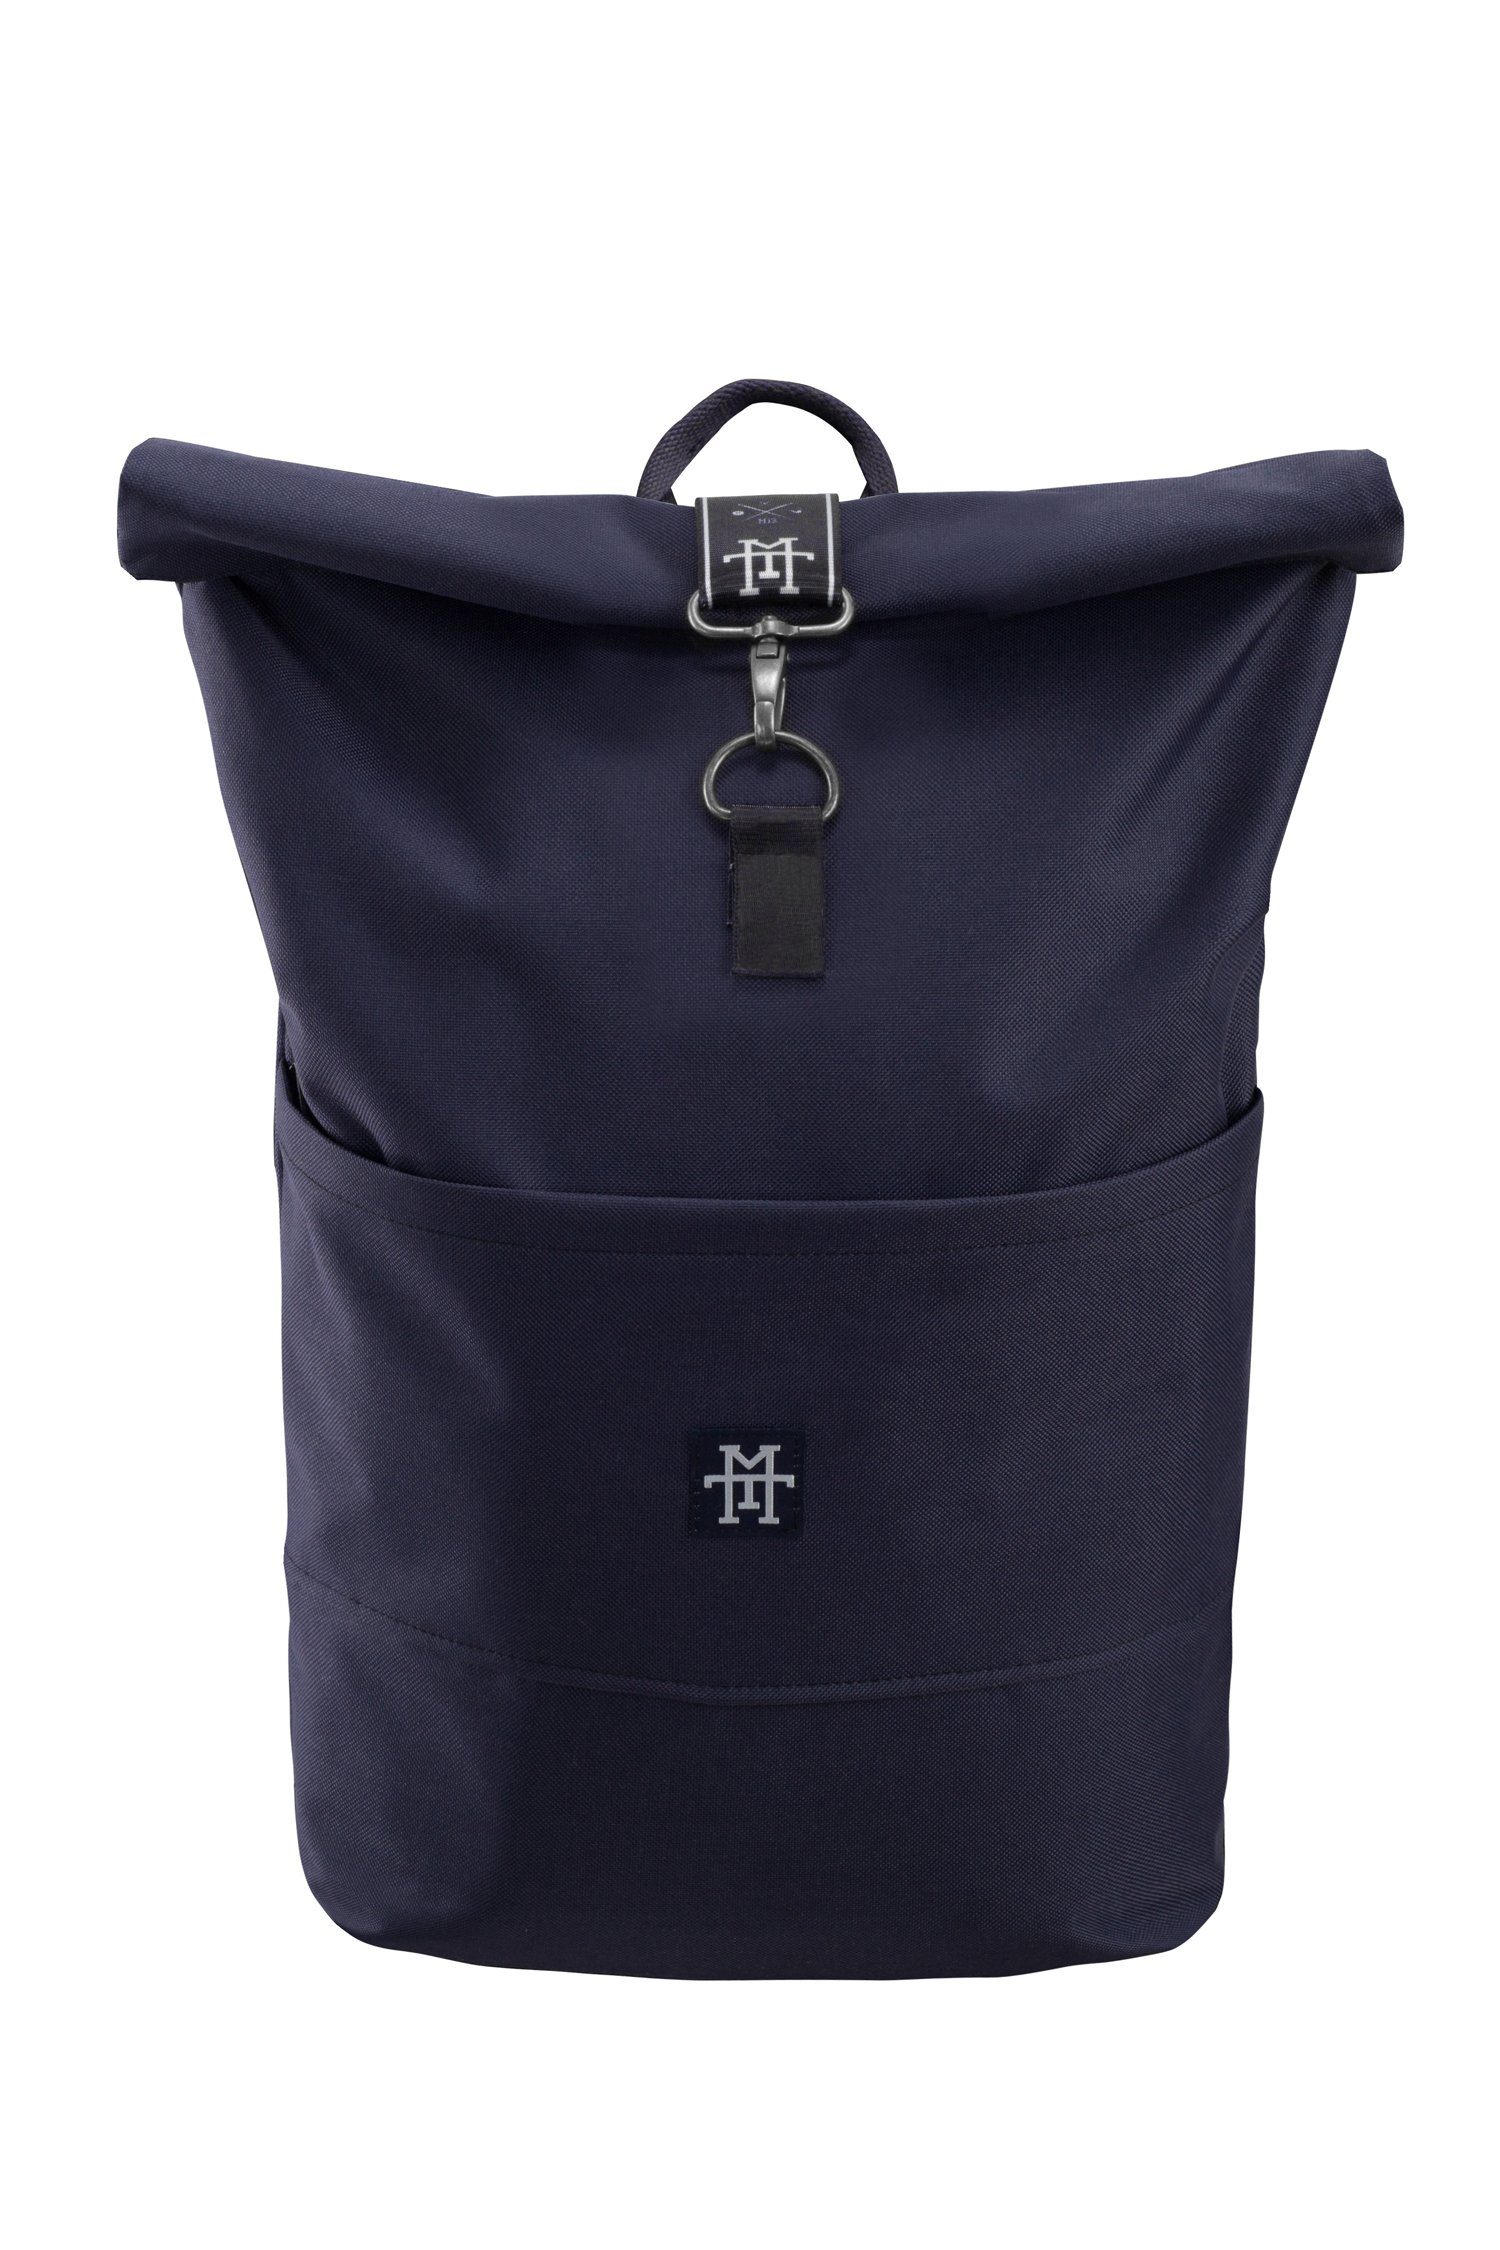 Manufaktur13 Tagesrucksack Roll-Top Backpack - Rucksack mit Rollverschluss, wasserdicht/wasserabweisend, verstellbare Gurte Navy Taped Edition